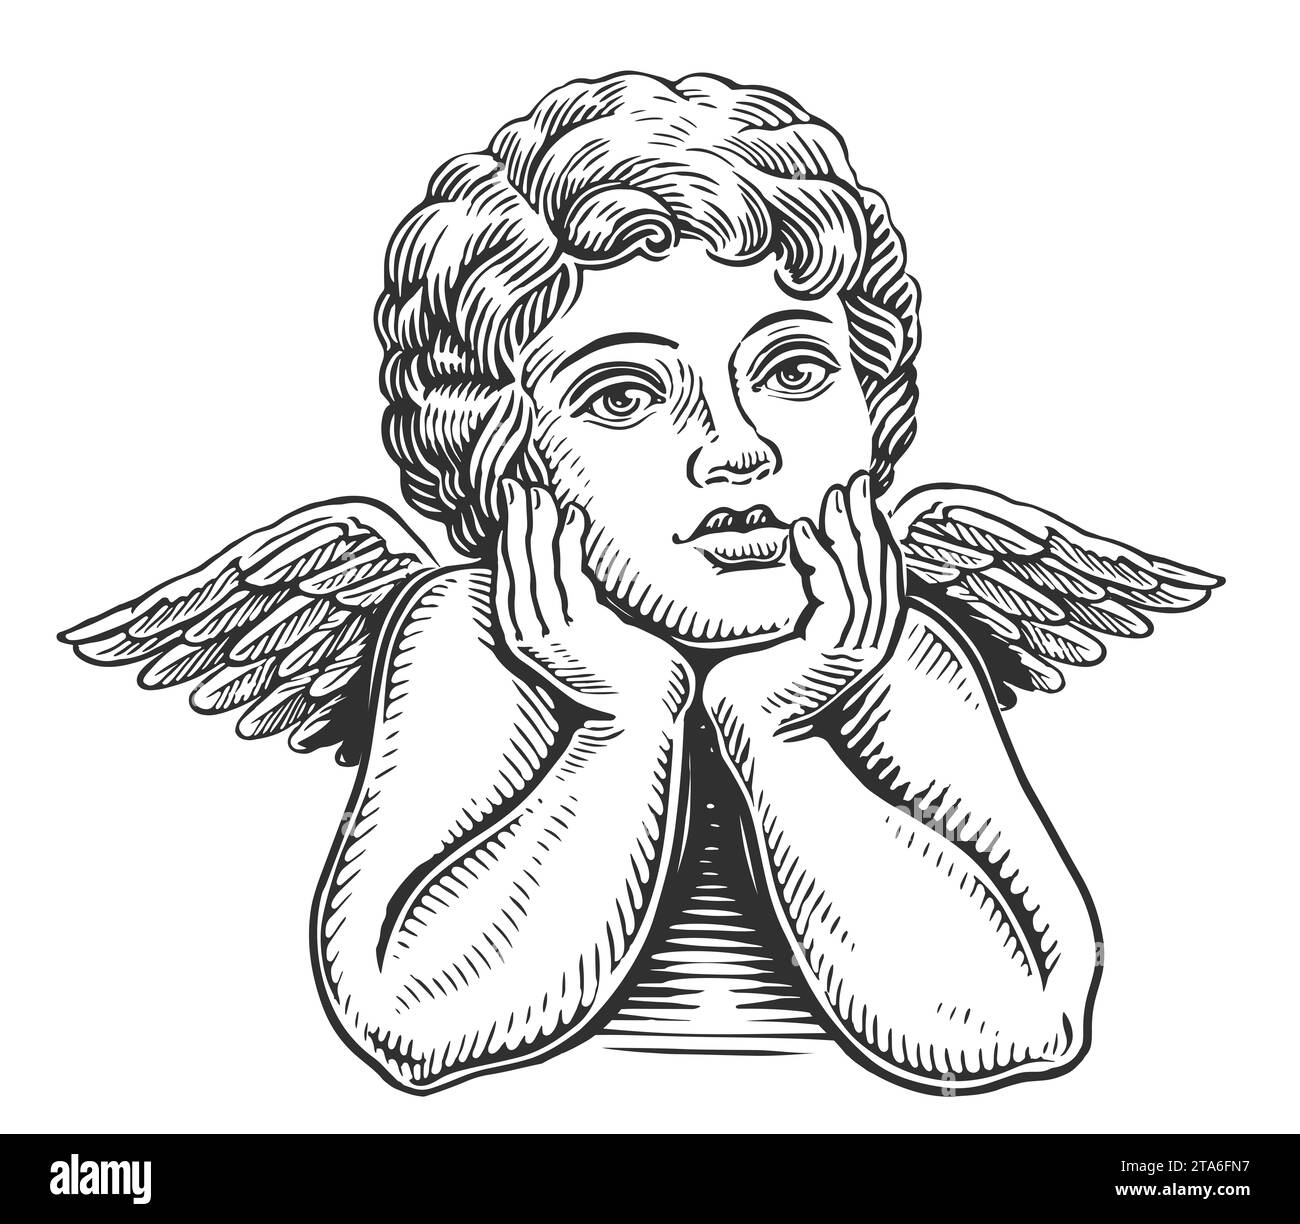 Ange enfant avec des ailes. Croquis de Cherub ou Cupidon. Style de gravure d'illustration dessinée à la main Banque D'Images